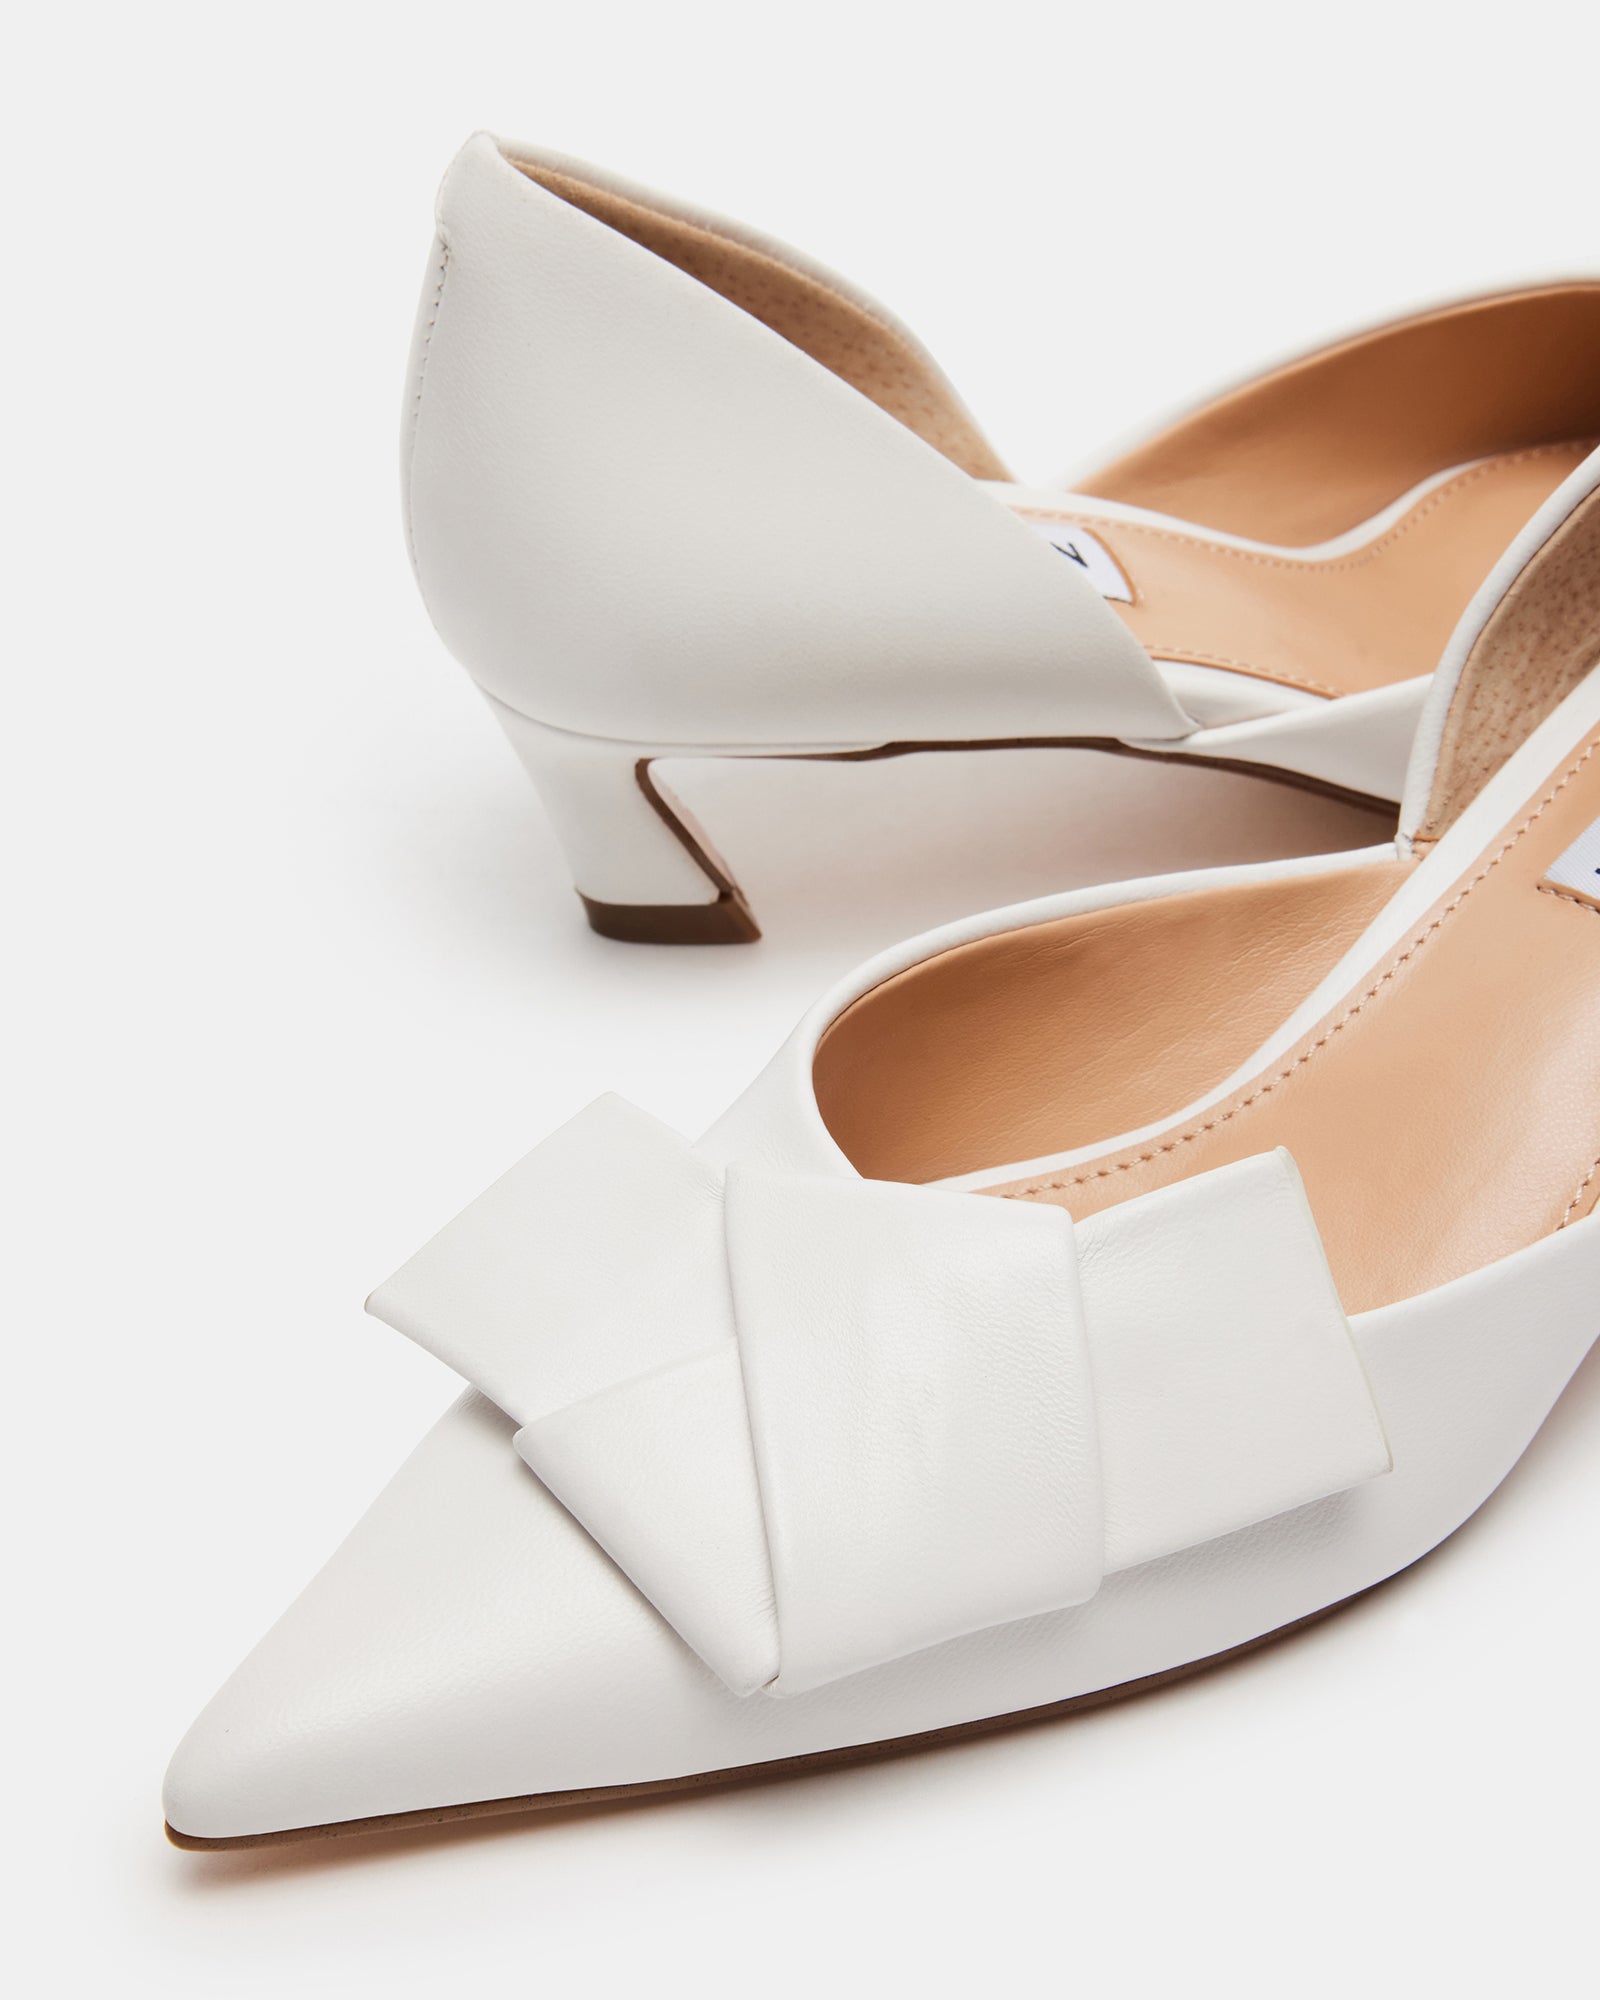 LAKOTA White Leather Bow Kitten Heel | Women's Heels – Steve Madden